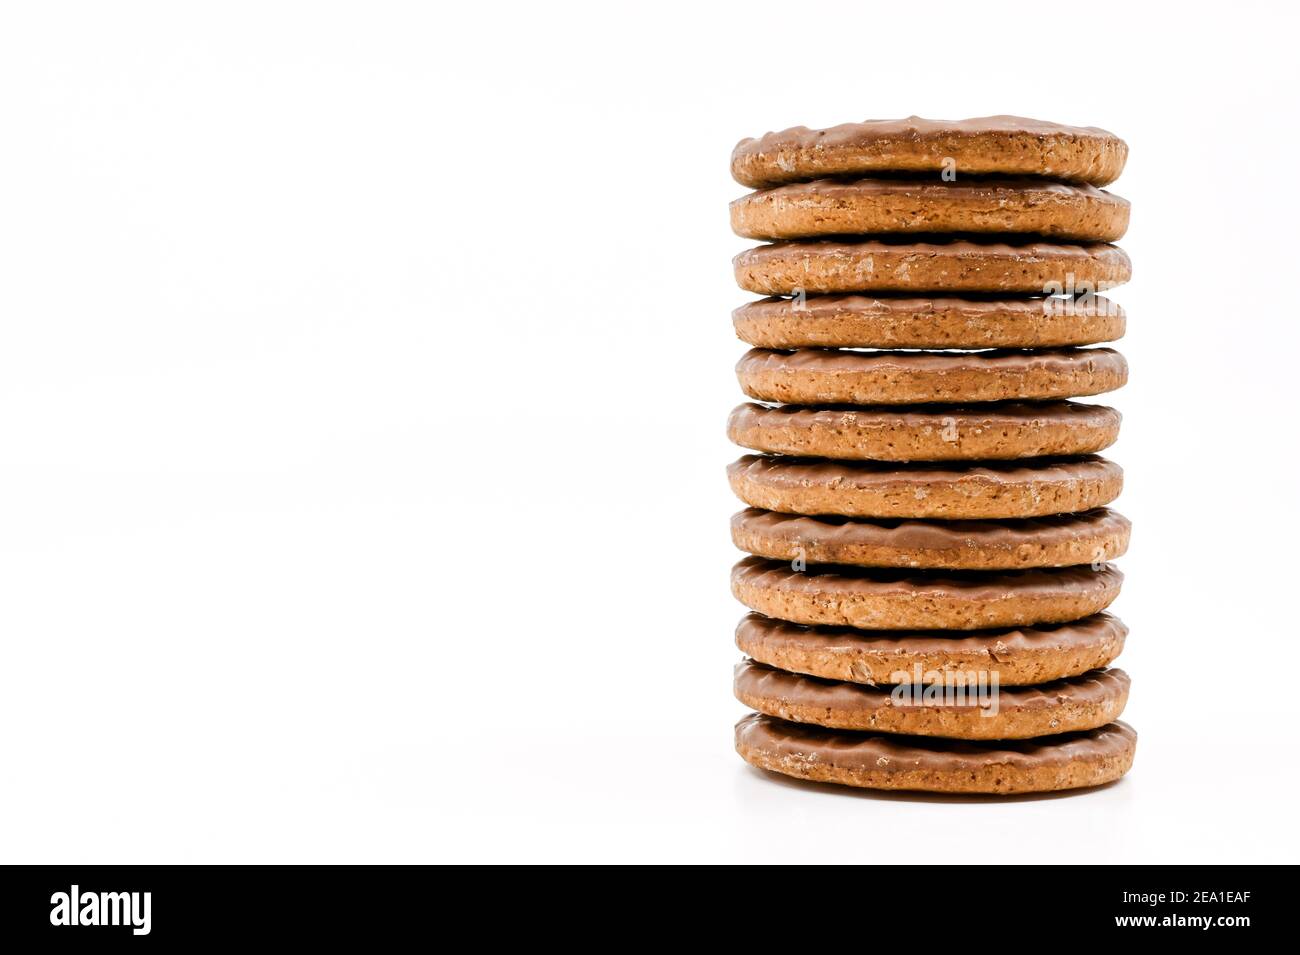 Biscuits au chocolat faits maison avec un revêtement de sucre glace crépité  Photo Stock - Alamy